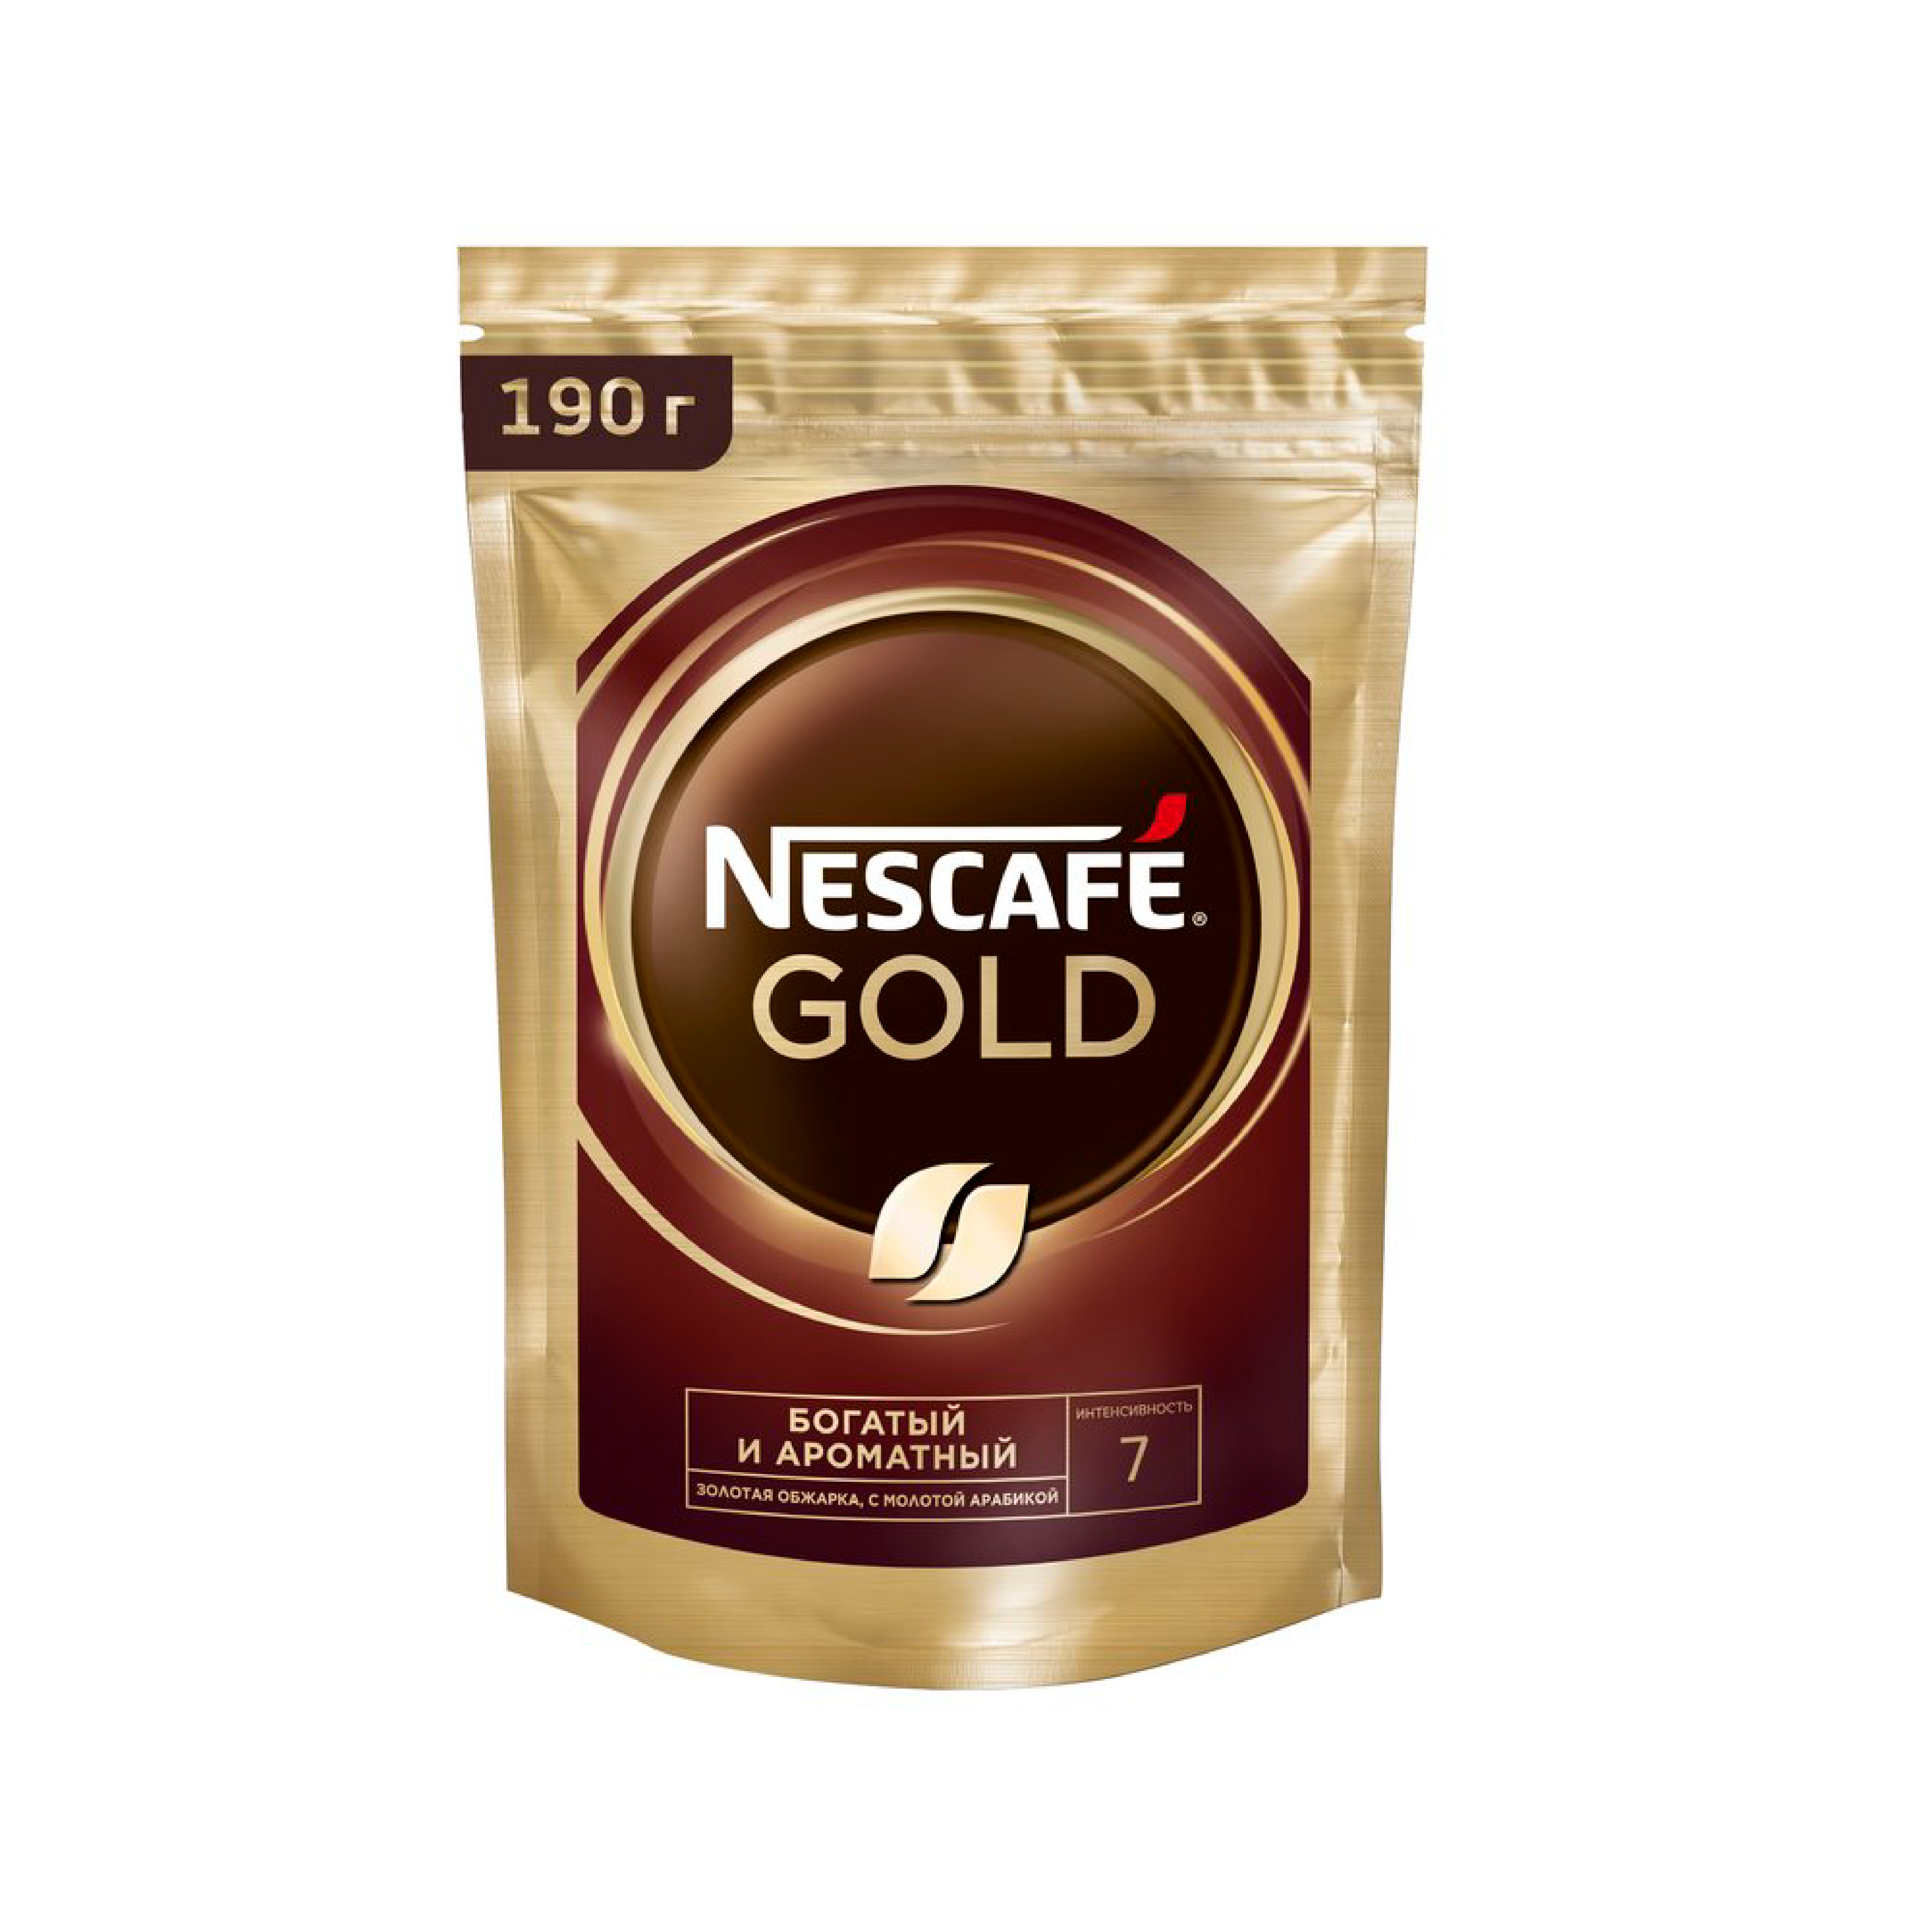 Кофе растворимый nescafe gold 900. Кофе Нескафе Голд 900 гр. Nescafe кофе Gold 900г.. Кофе Нескафе Голд 900гр м.у. Кофе растворимый Nescafe Gold 900 гр.